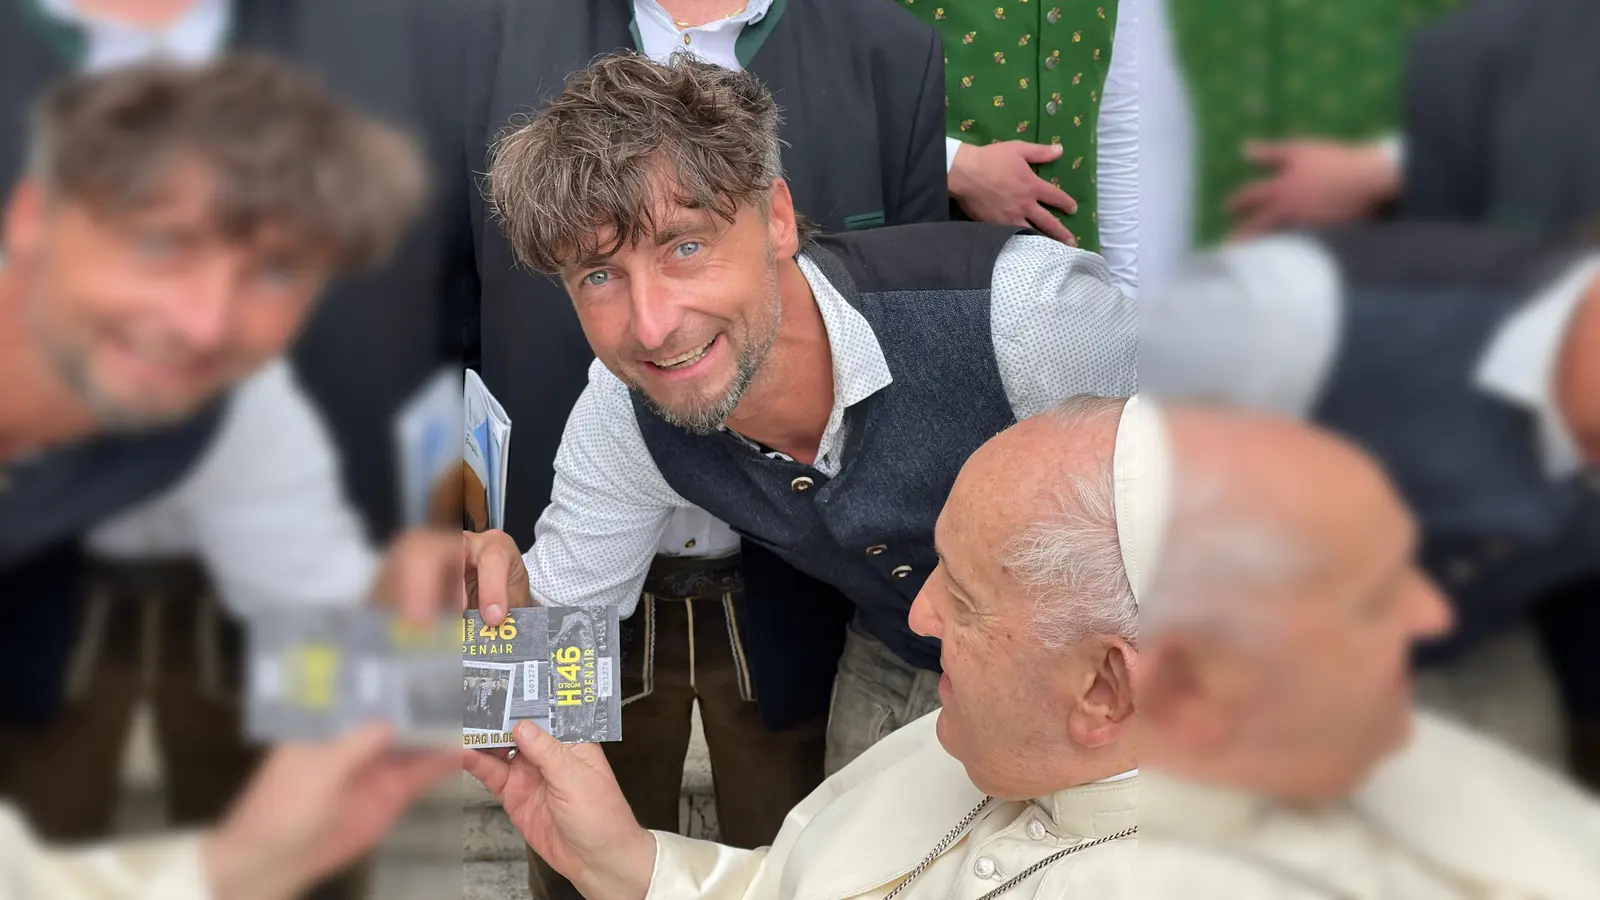 Auch Papst Franziskus hat ein Ticket für das H46-Open-Air vom 9. bis 11. Juni in Lindl. Hannes Ankner hat es dem Heiligen Vater im Rahmen der jüngsten Generalaudienz auf dem Petersplatz in Rom persönlich überreicht.  (Foto: privat)